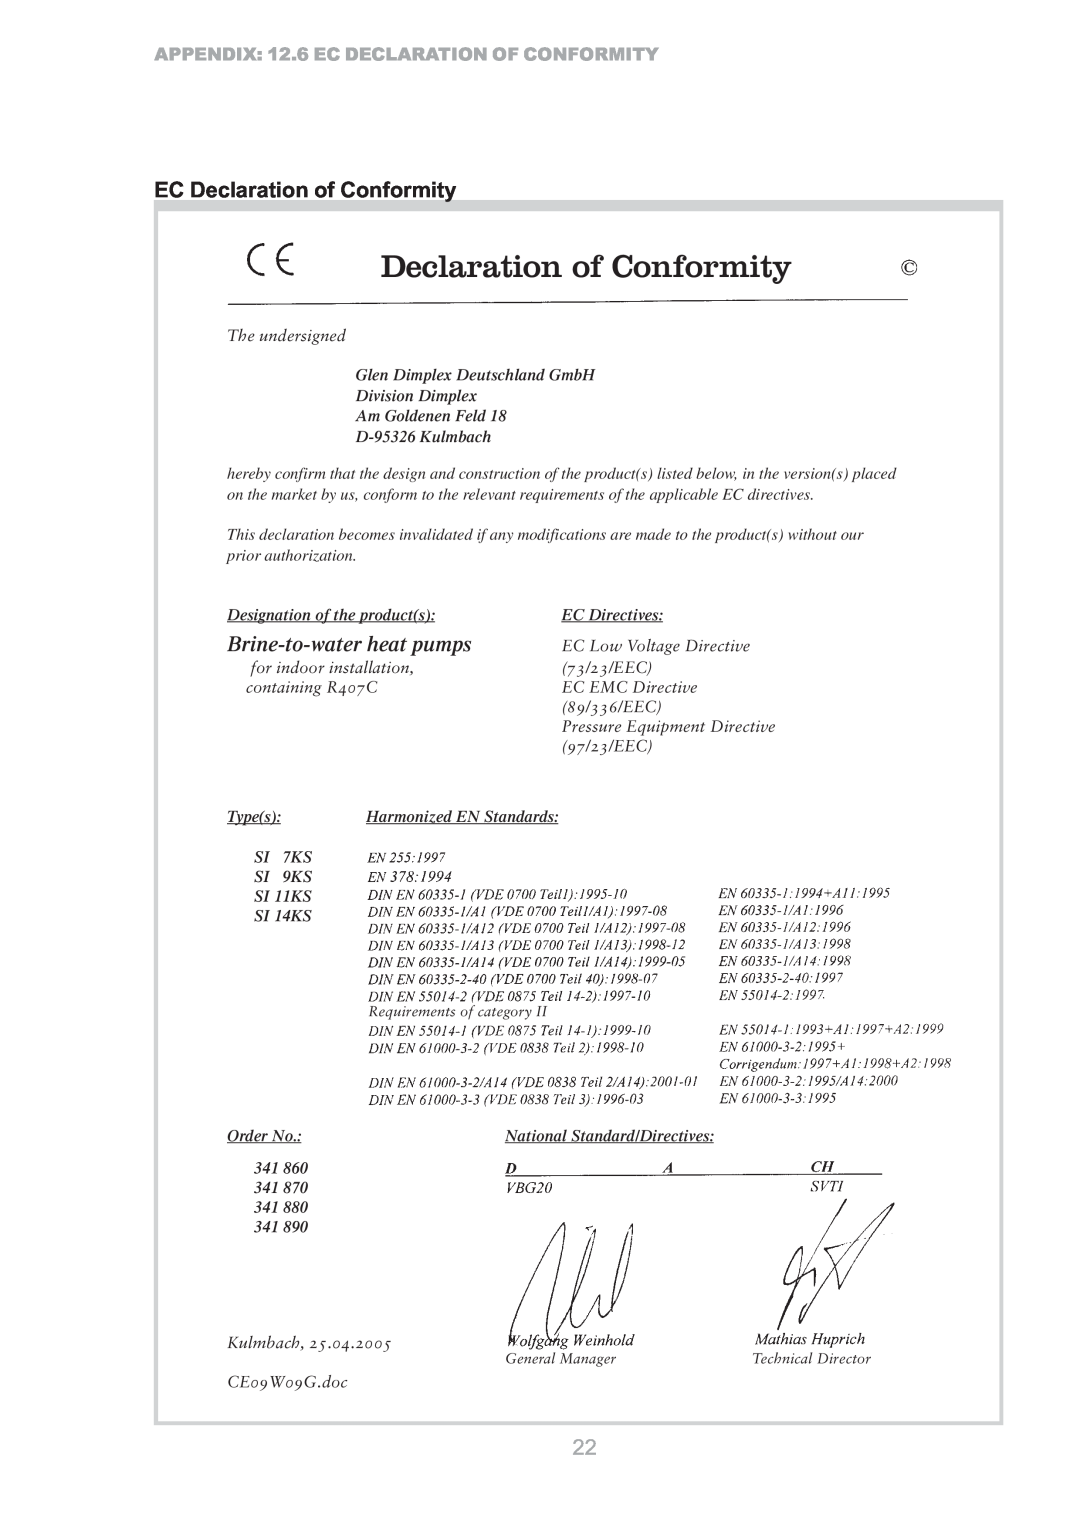 Dimplex S1 7KS EC Declaration of Conformity, Brine-to-waterheat pumps, APPENDIX 12.6 EC DECLARATION OF CONFORMITY 